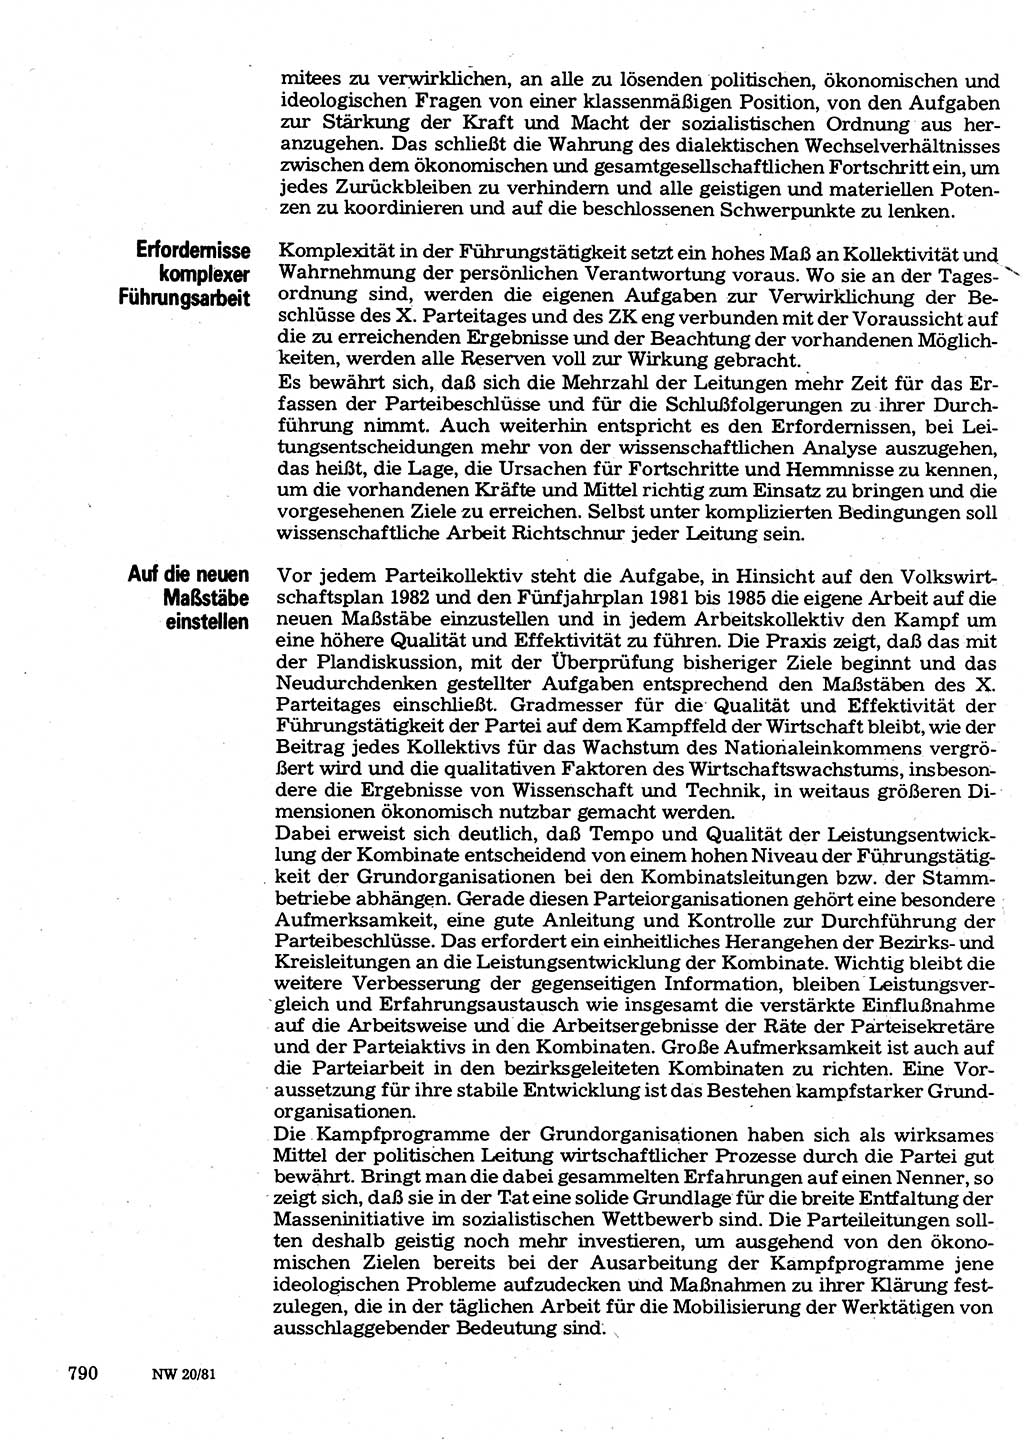 Neuer Weg (NW), Organ des Zentralkomitees (ZK) der SED (Sozialistische Einheitspartei Deutschlands) für Fragen des Parteilebens, 36. Jahrgang [Deutsche Demokratische Republik (DDR)] 1981, Seite 790 (NW ZK SED DDR 1981, S. 790)